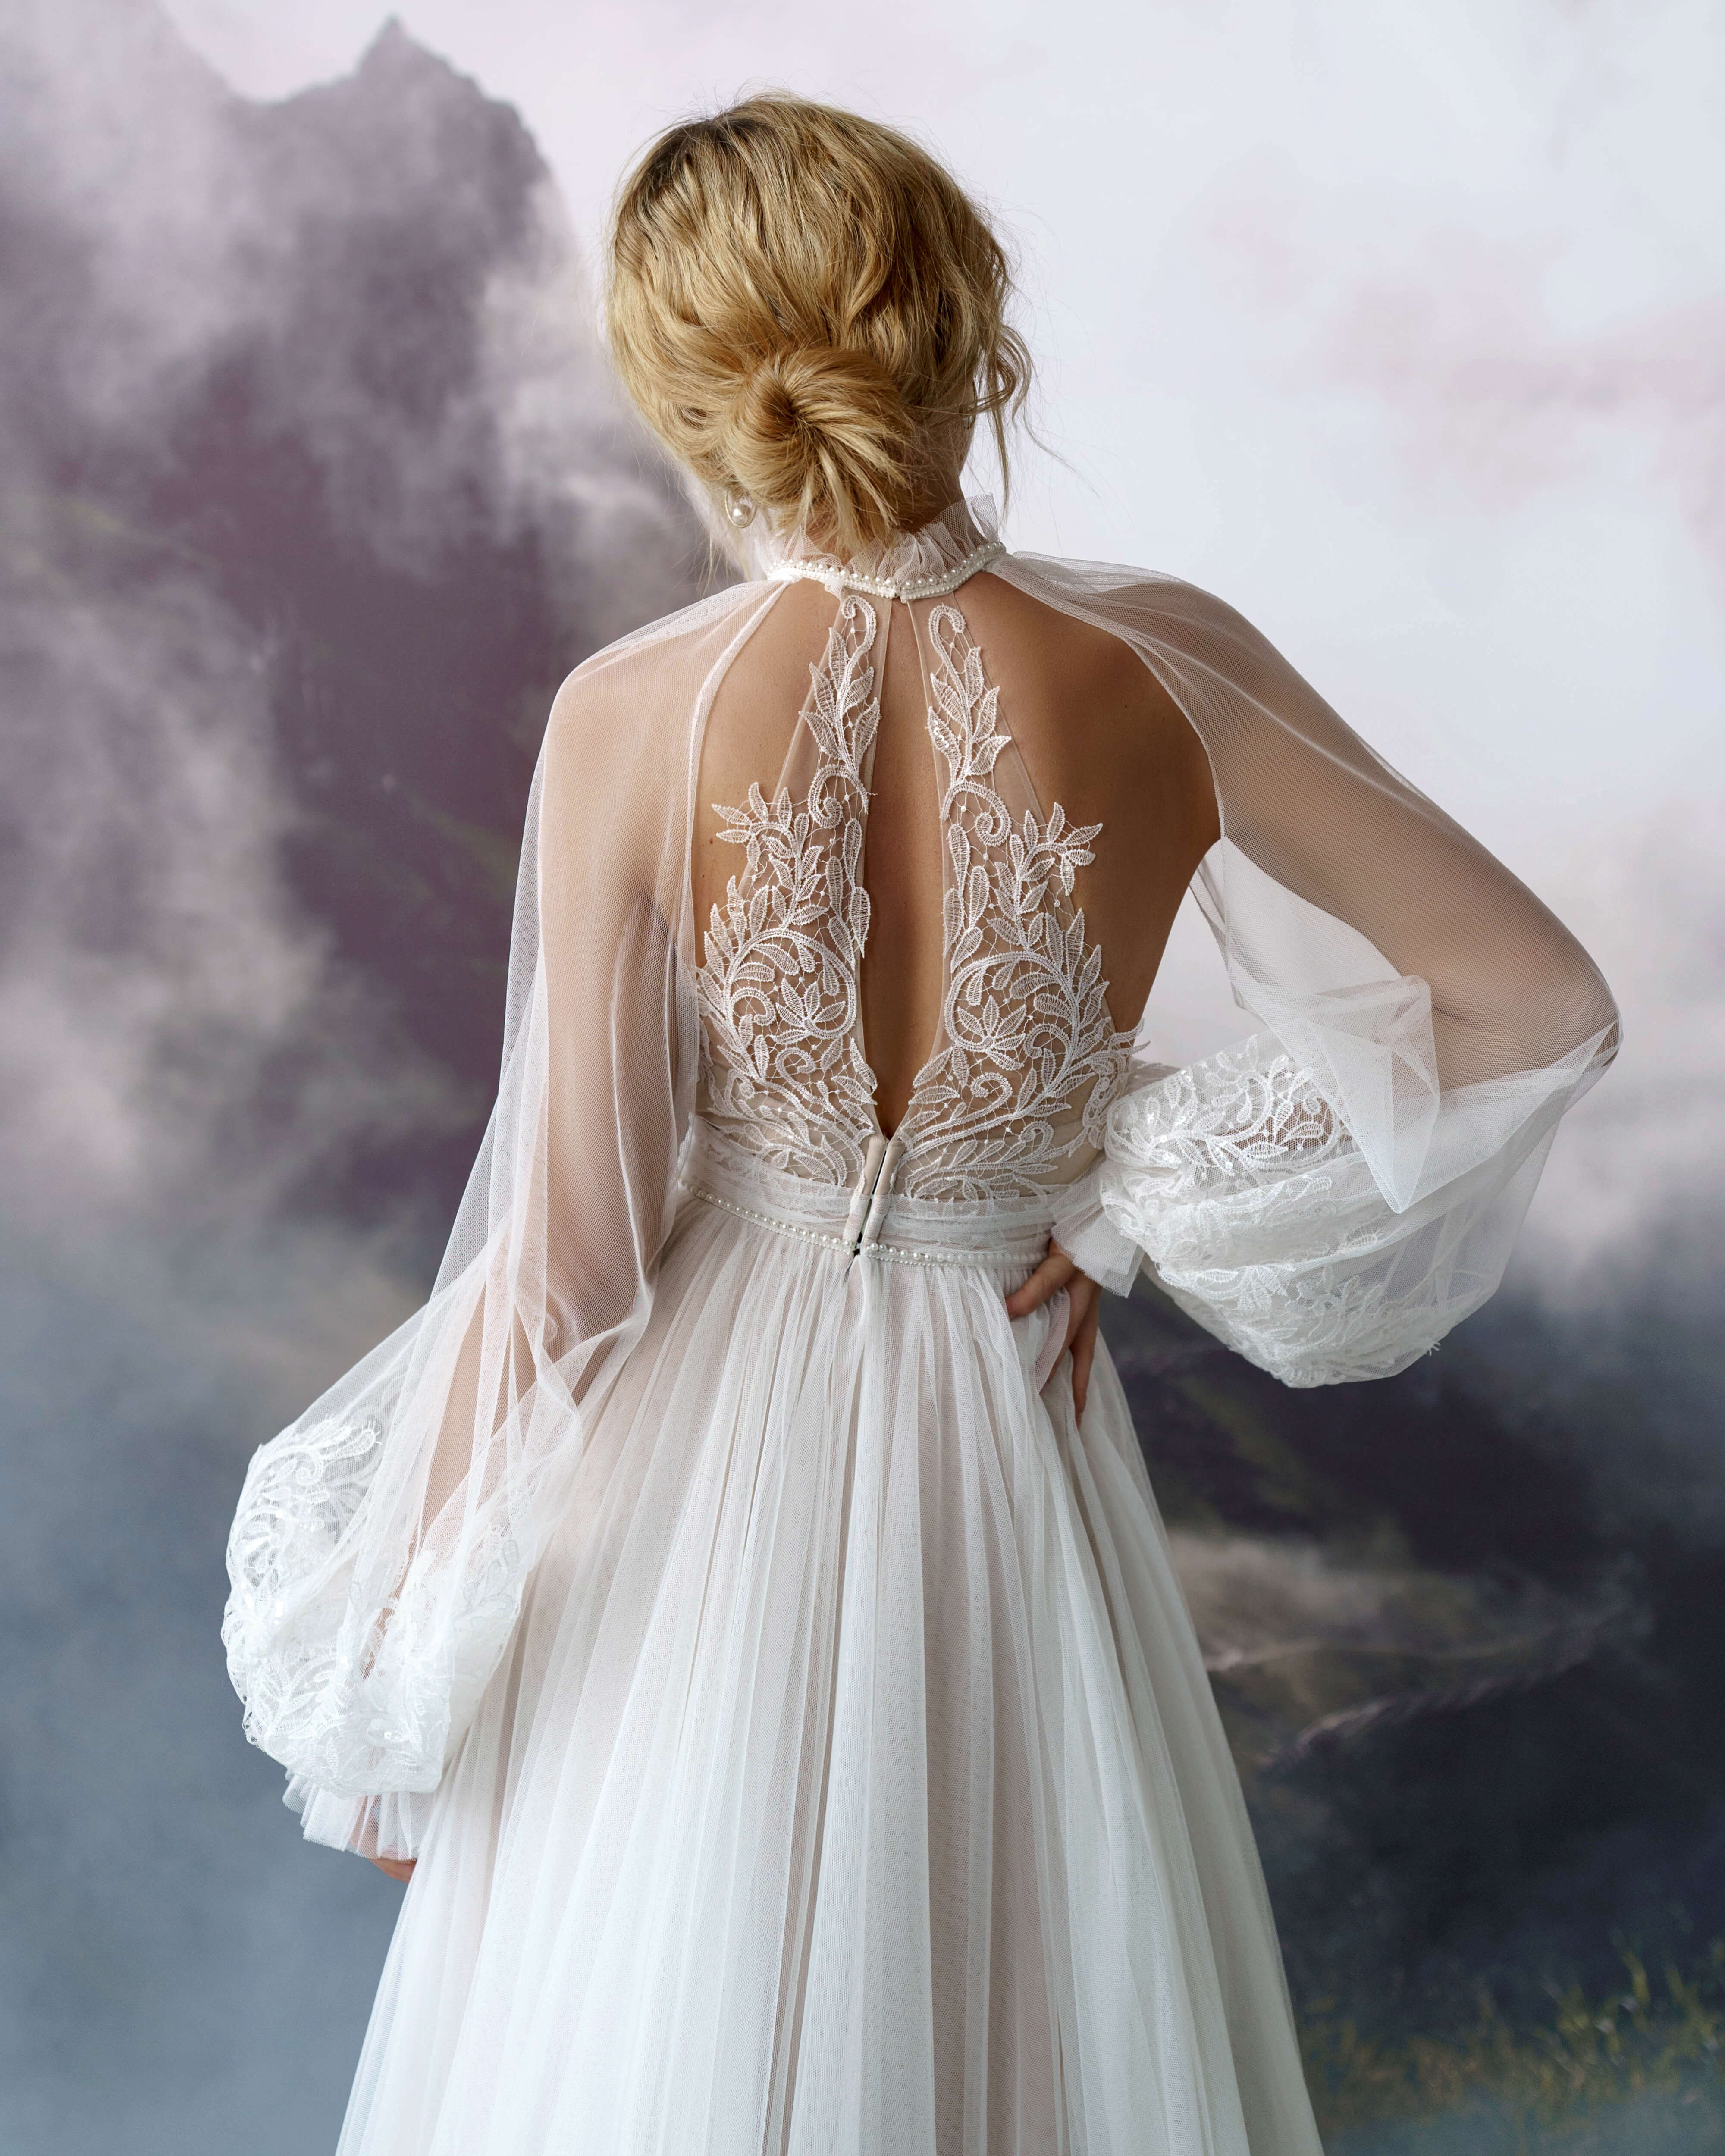 Купить свадебное платье «Элиан» Бламмо Биамо из коллекции Сказка 2022 года в салоне «Мэри Трюфель»